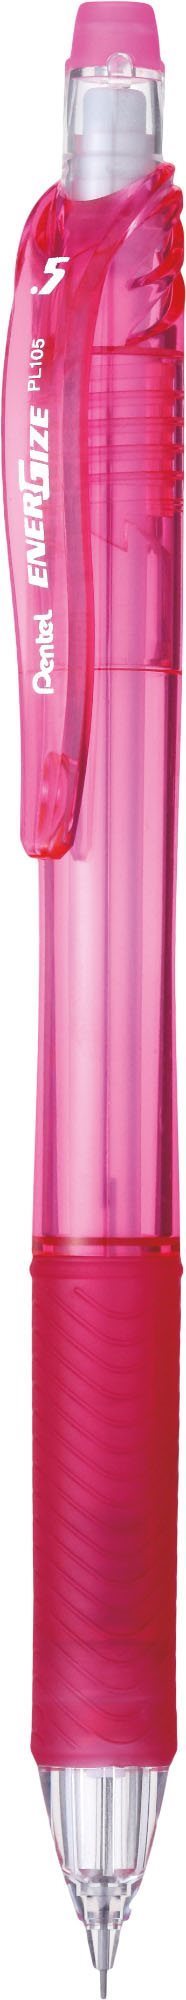 Pentel PL107-P EnerGizeX stiftpenna 0,7 pink 84% RECYCOLOGY